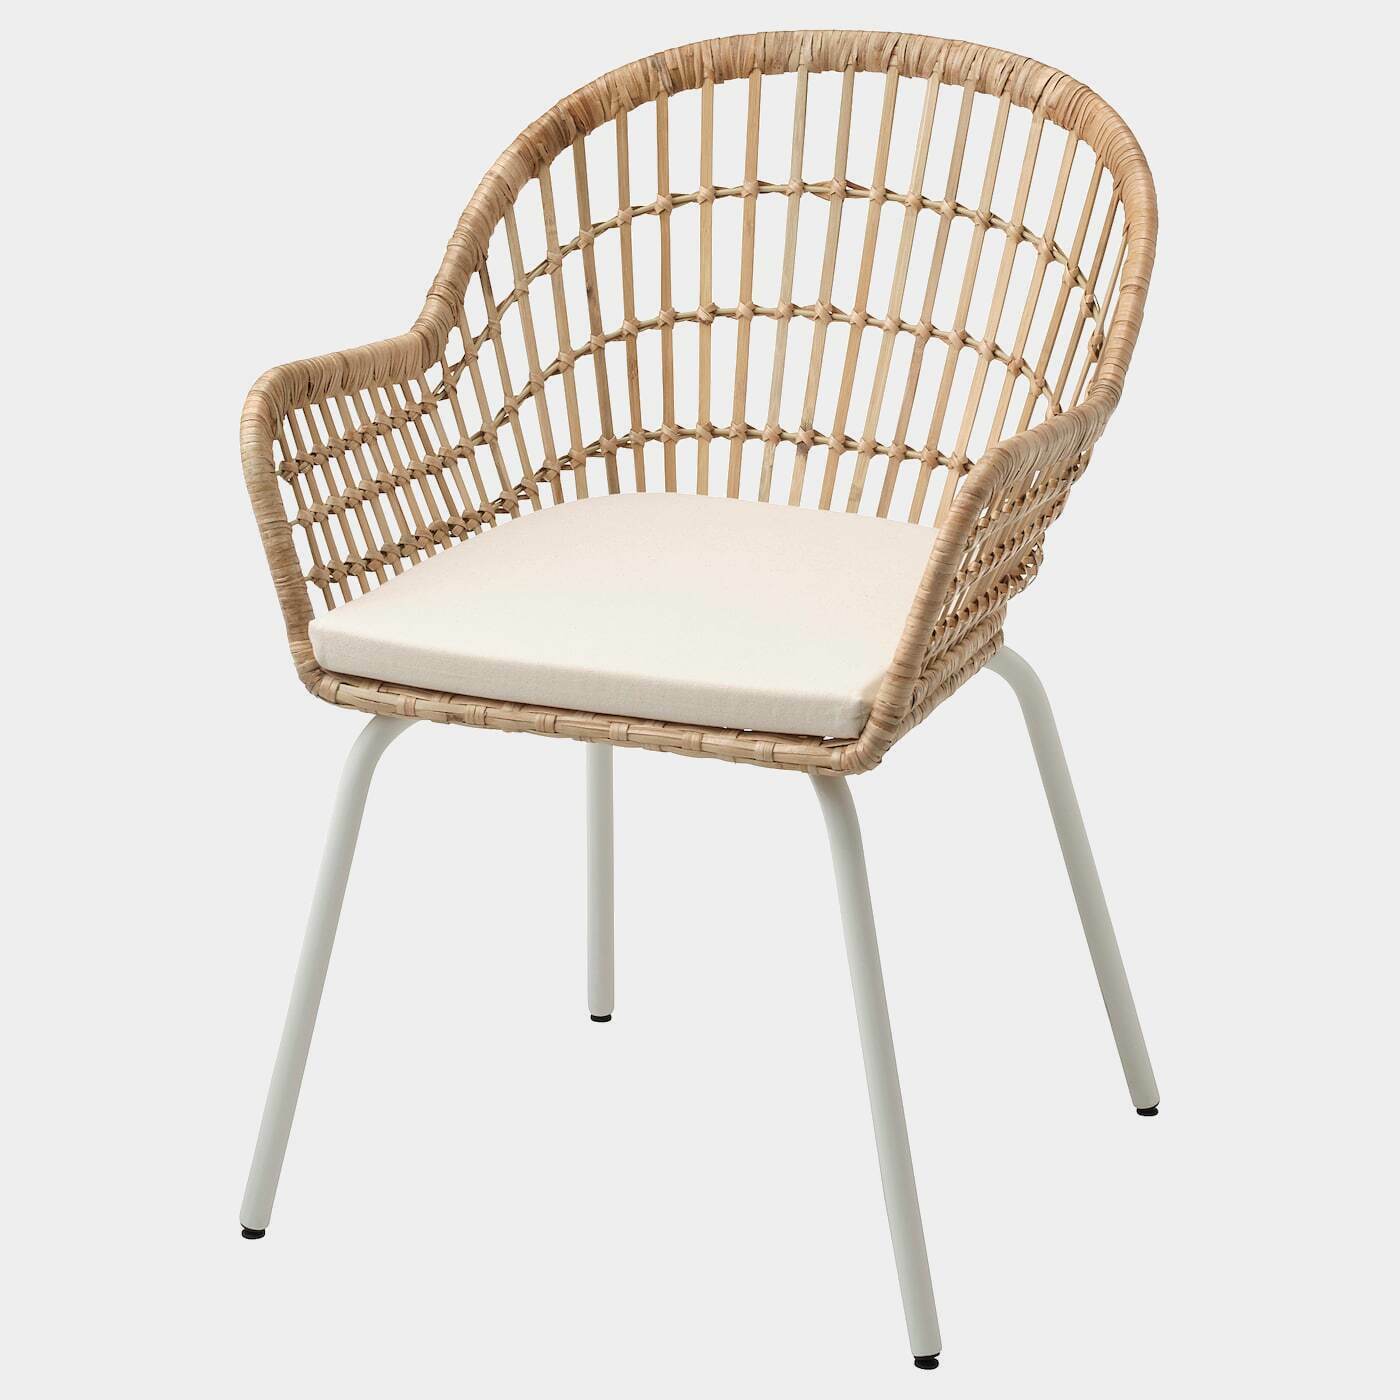 NILSOVE / NORNA Stuhl mit Kissen  - Esszimmerstühle - Möbel Ideen für dein Zuhause von Home Trends. Möbel Trends von Social Media Influencer für dein Skandi Zuhause.